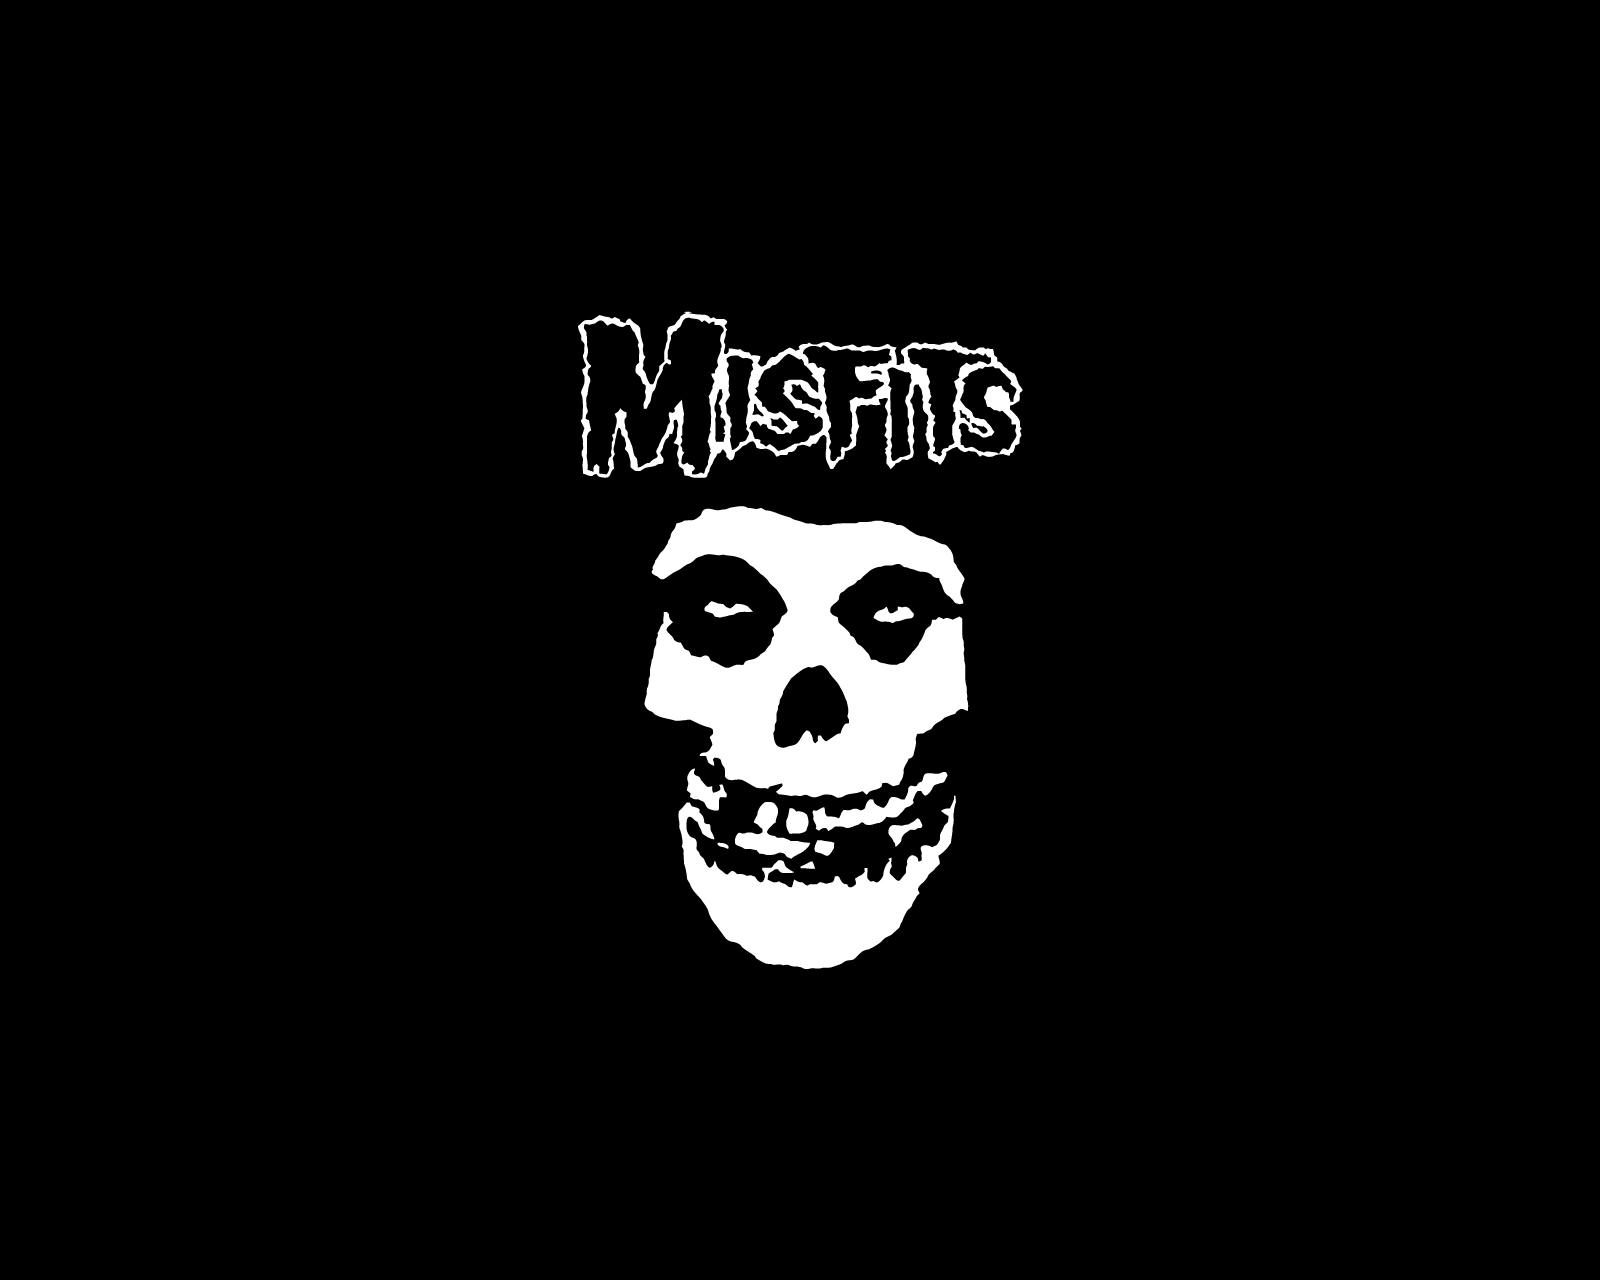 Misfits Logo And Wallpaper Band Logos Rock